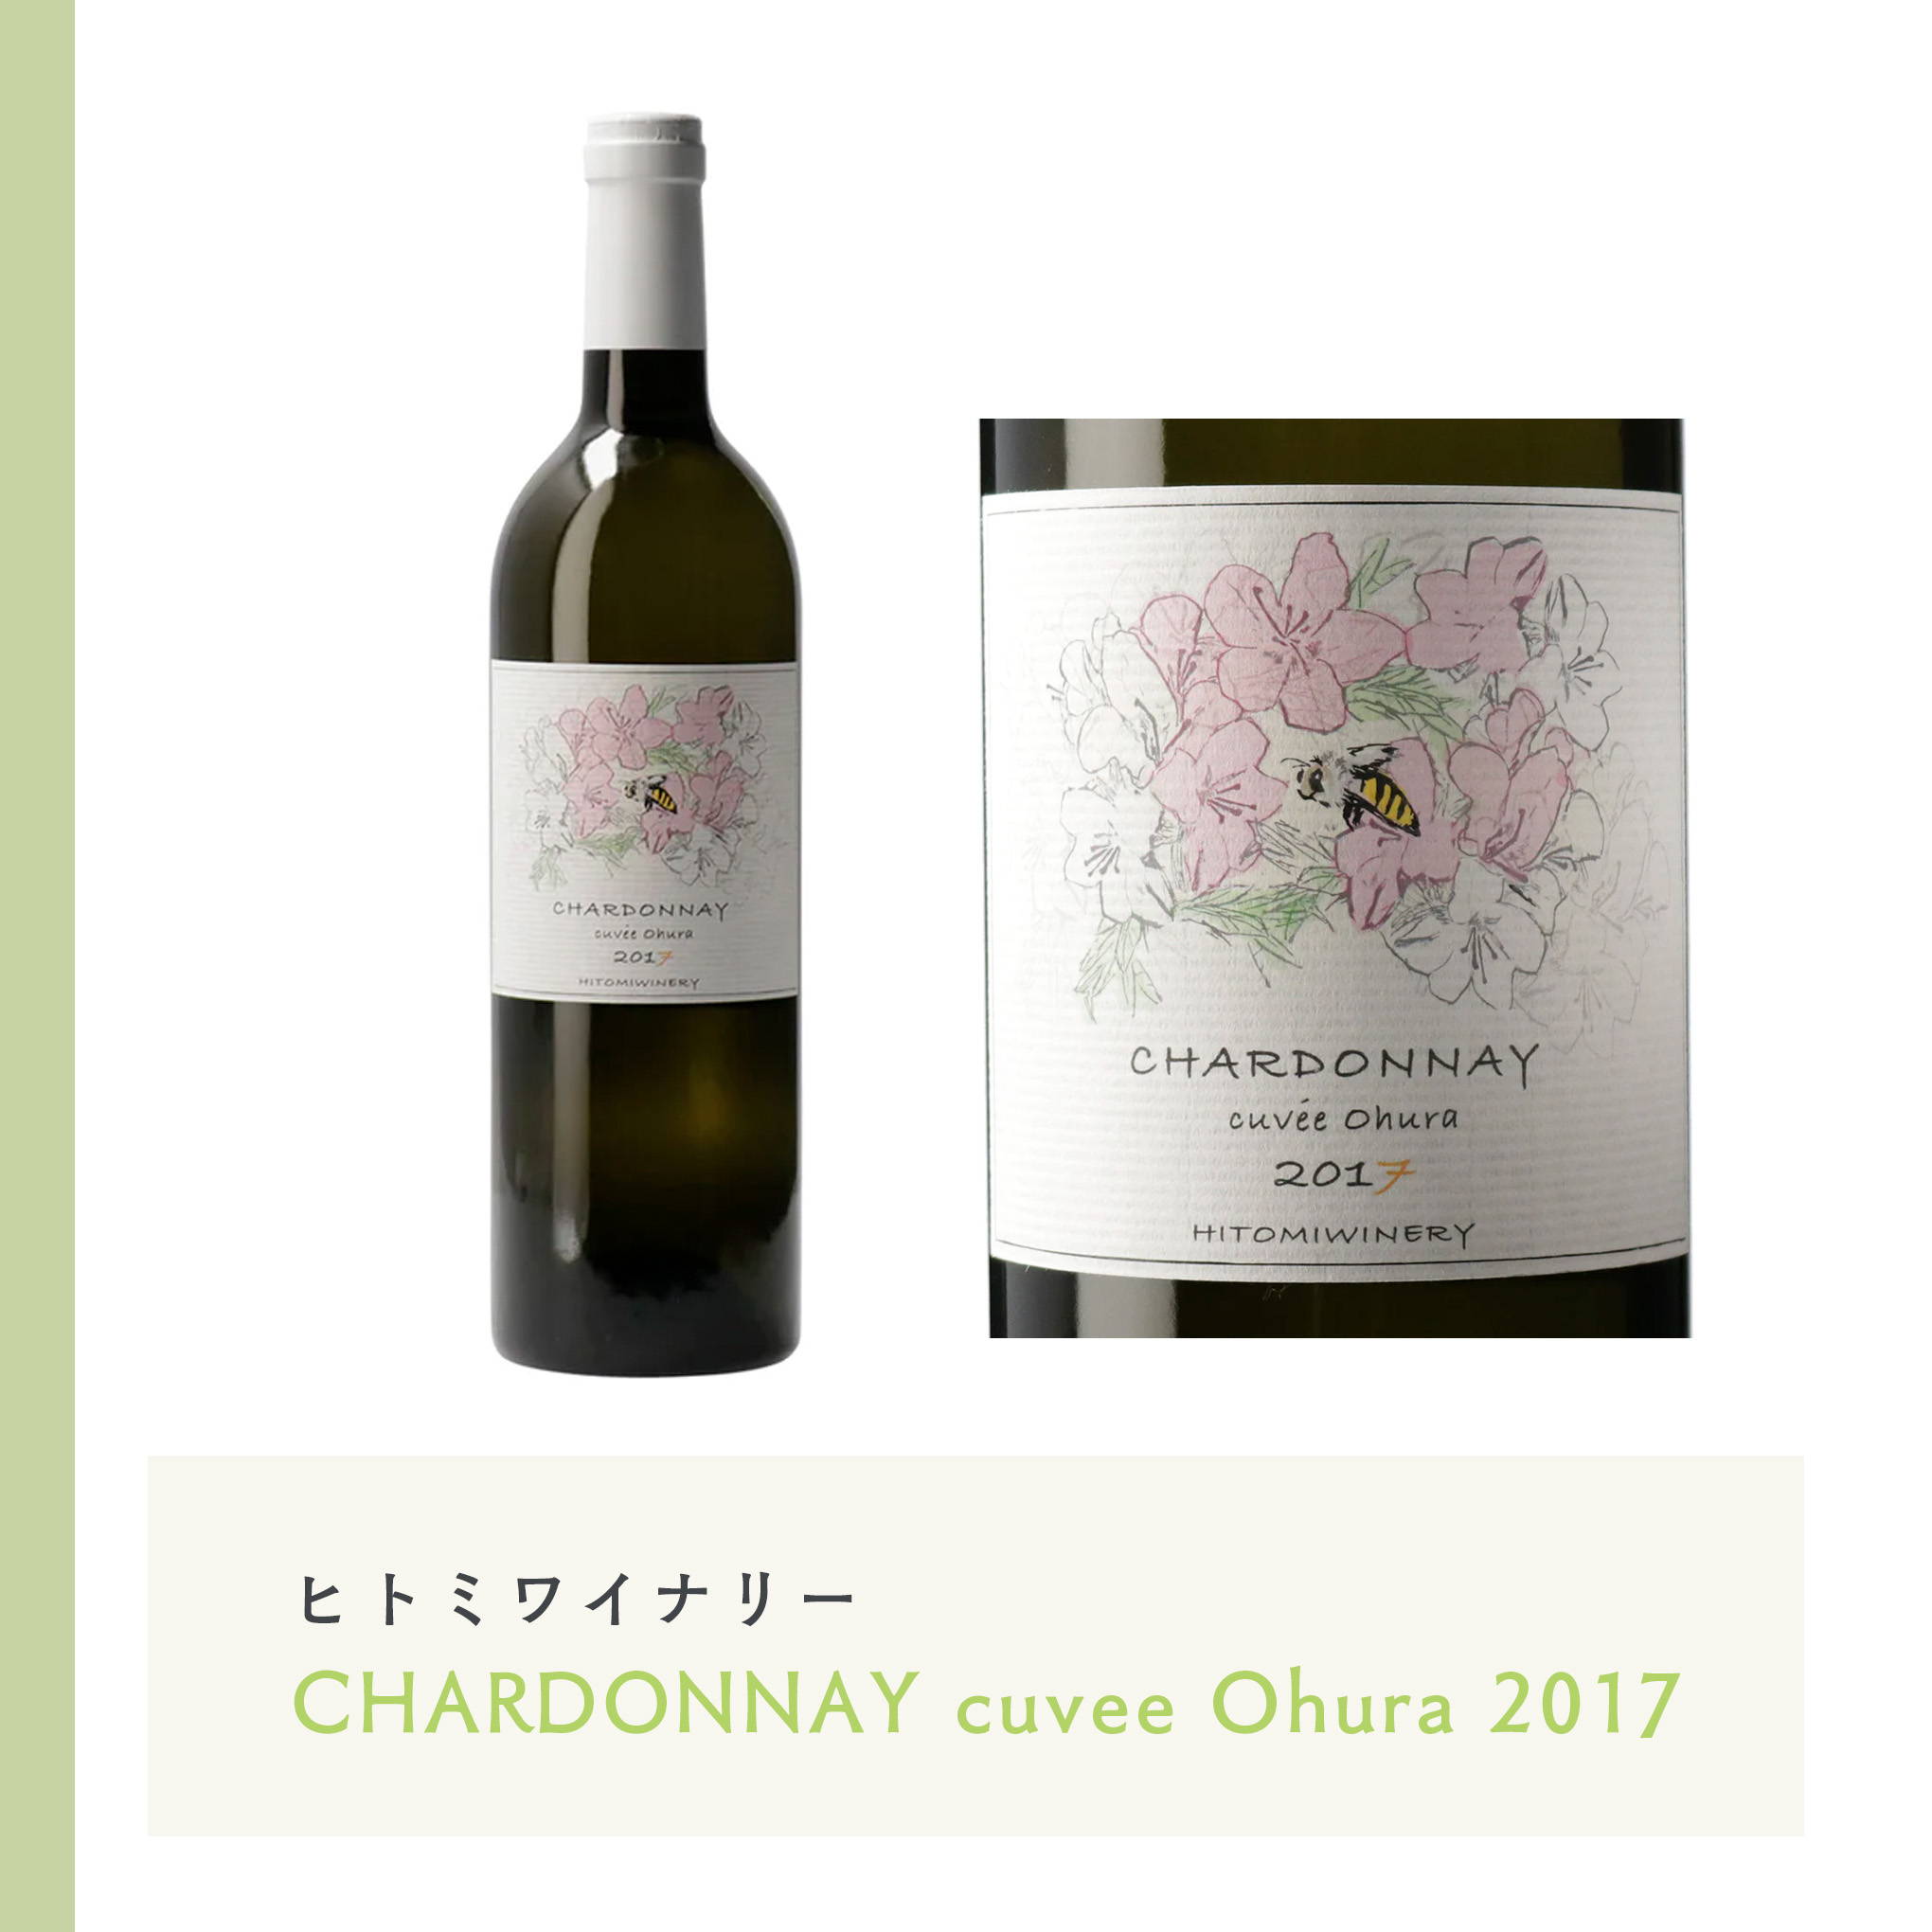 山形県高畠町の栽培家・大浦進氏による「シャルドネ」の柔らかい酸味と果実味を表現した白ワイン。